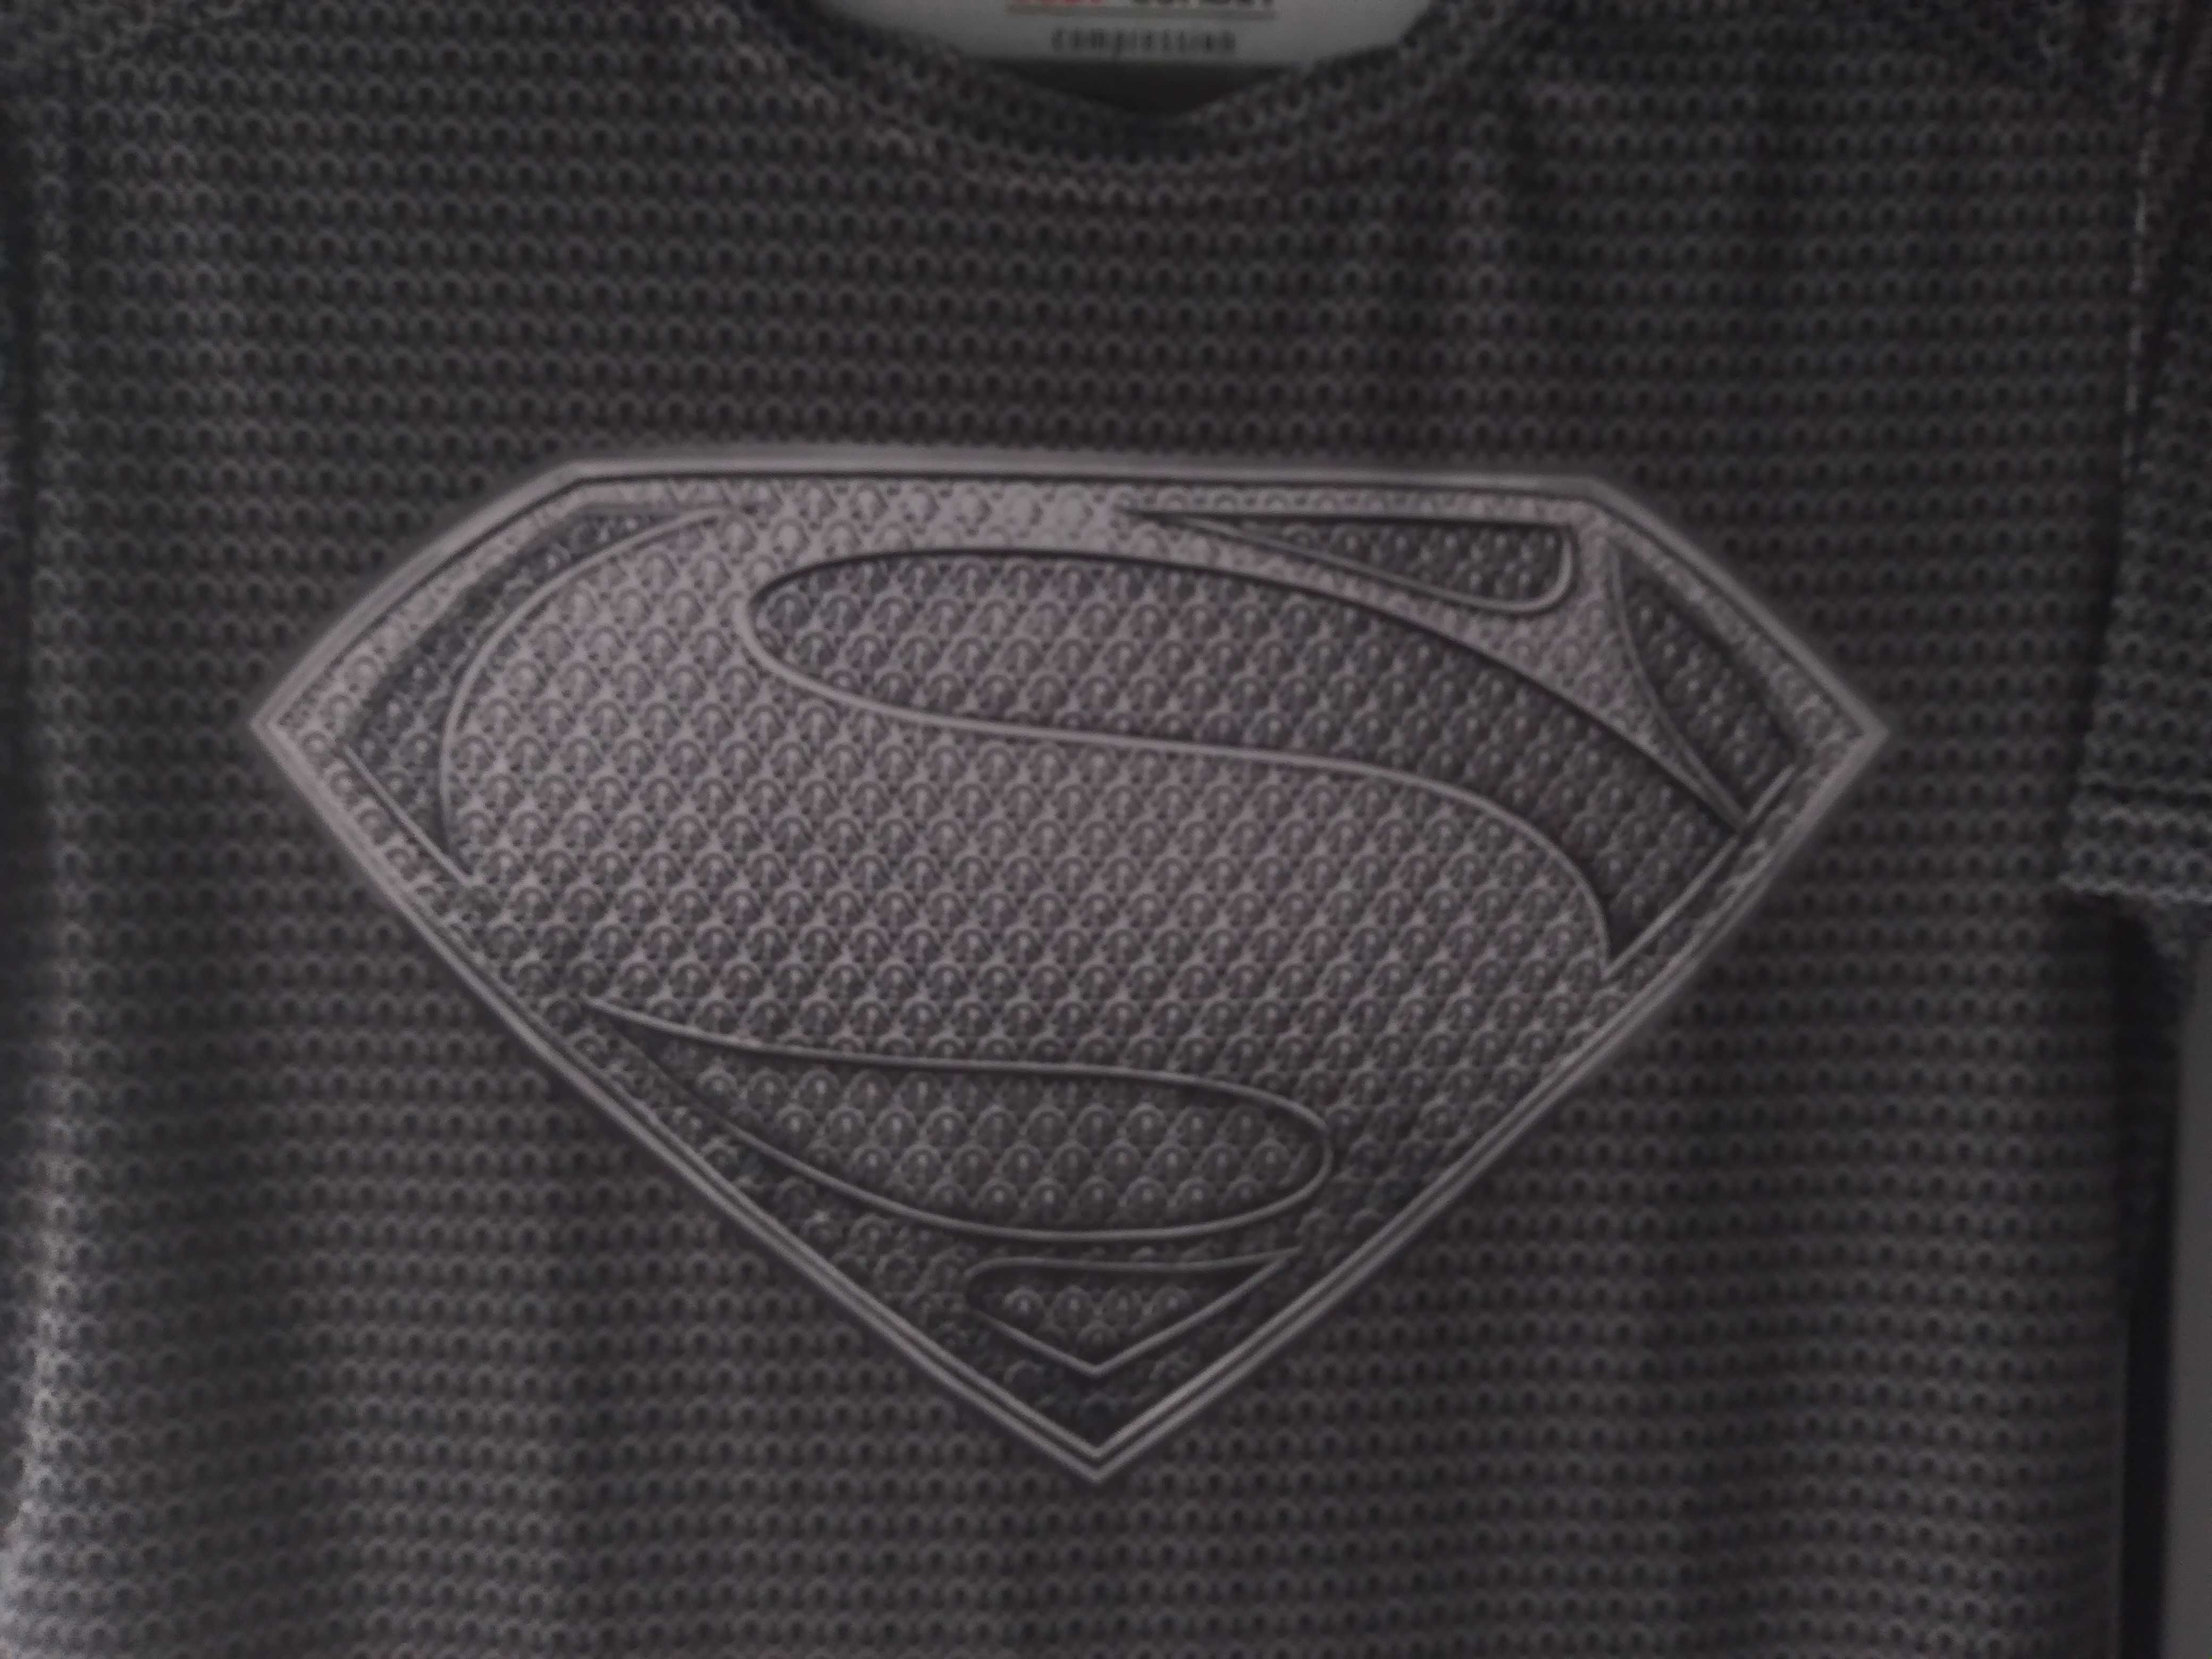 Cody Lundin мужская футболка с супер героем компрессионная футболка М